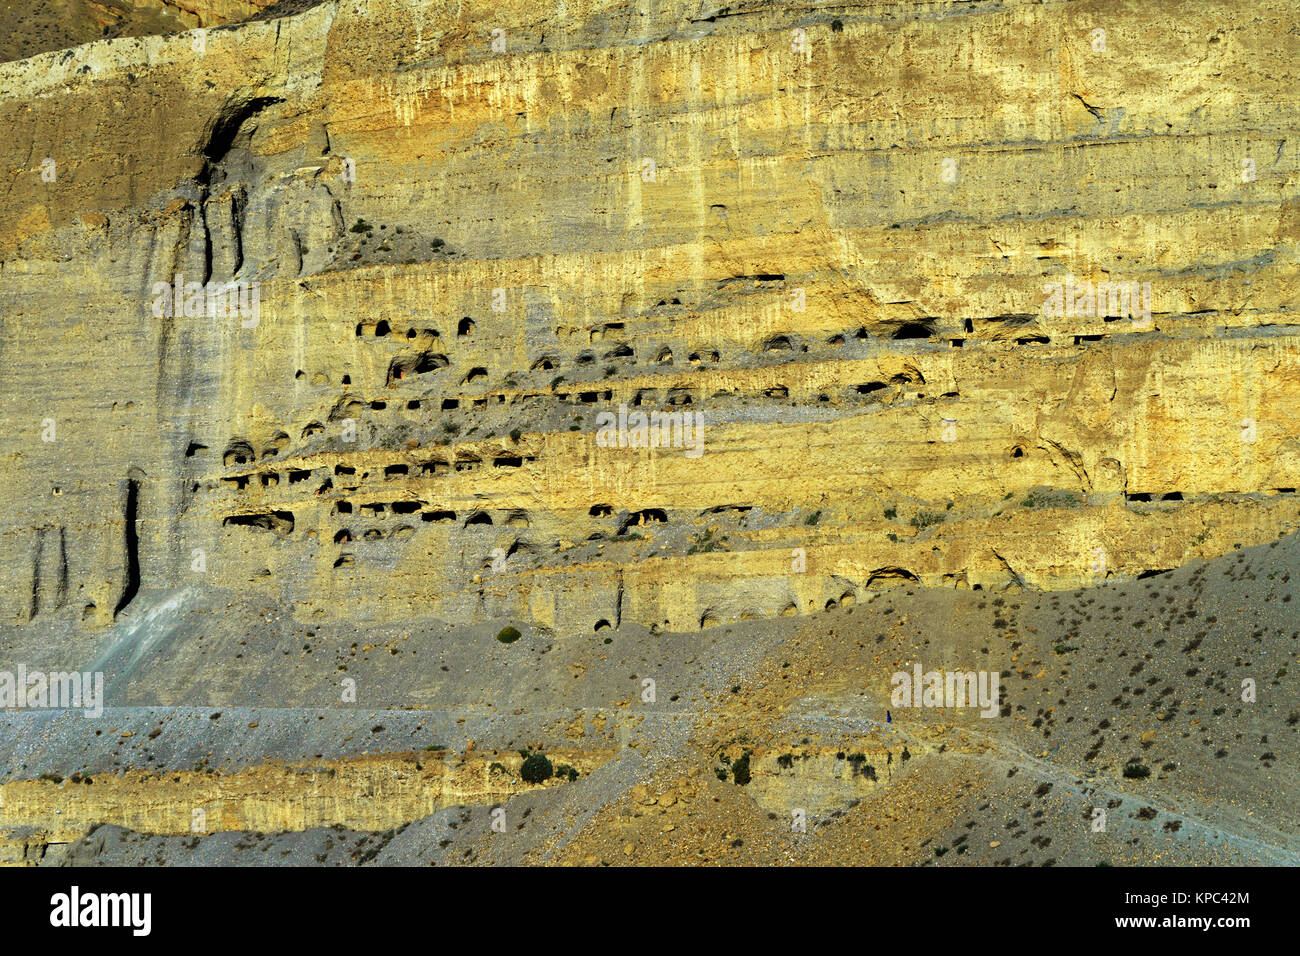 Grotta di antiche abitazioni scavate in un gigantesco rupe sopra Chuksang, Mustang superiore. Minuscolo silhouette di un viaggiatore visibile in basso a destra. Foto Stock